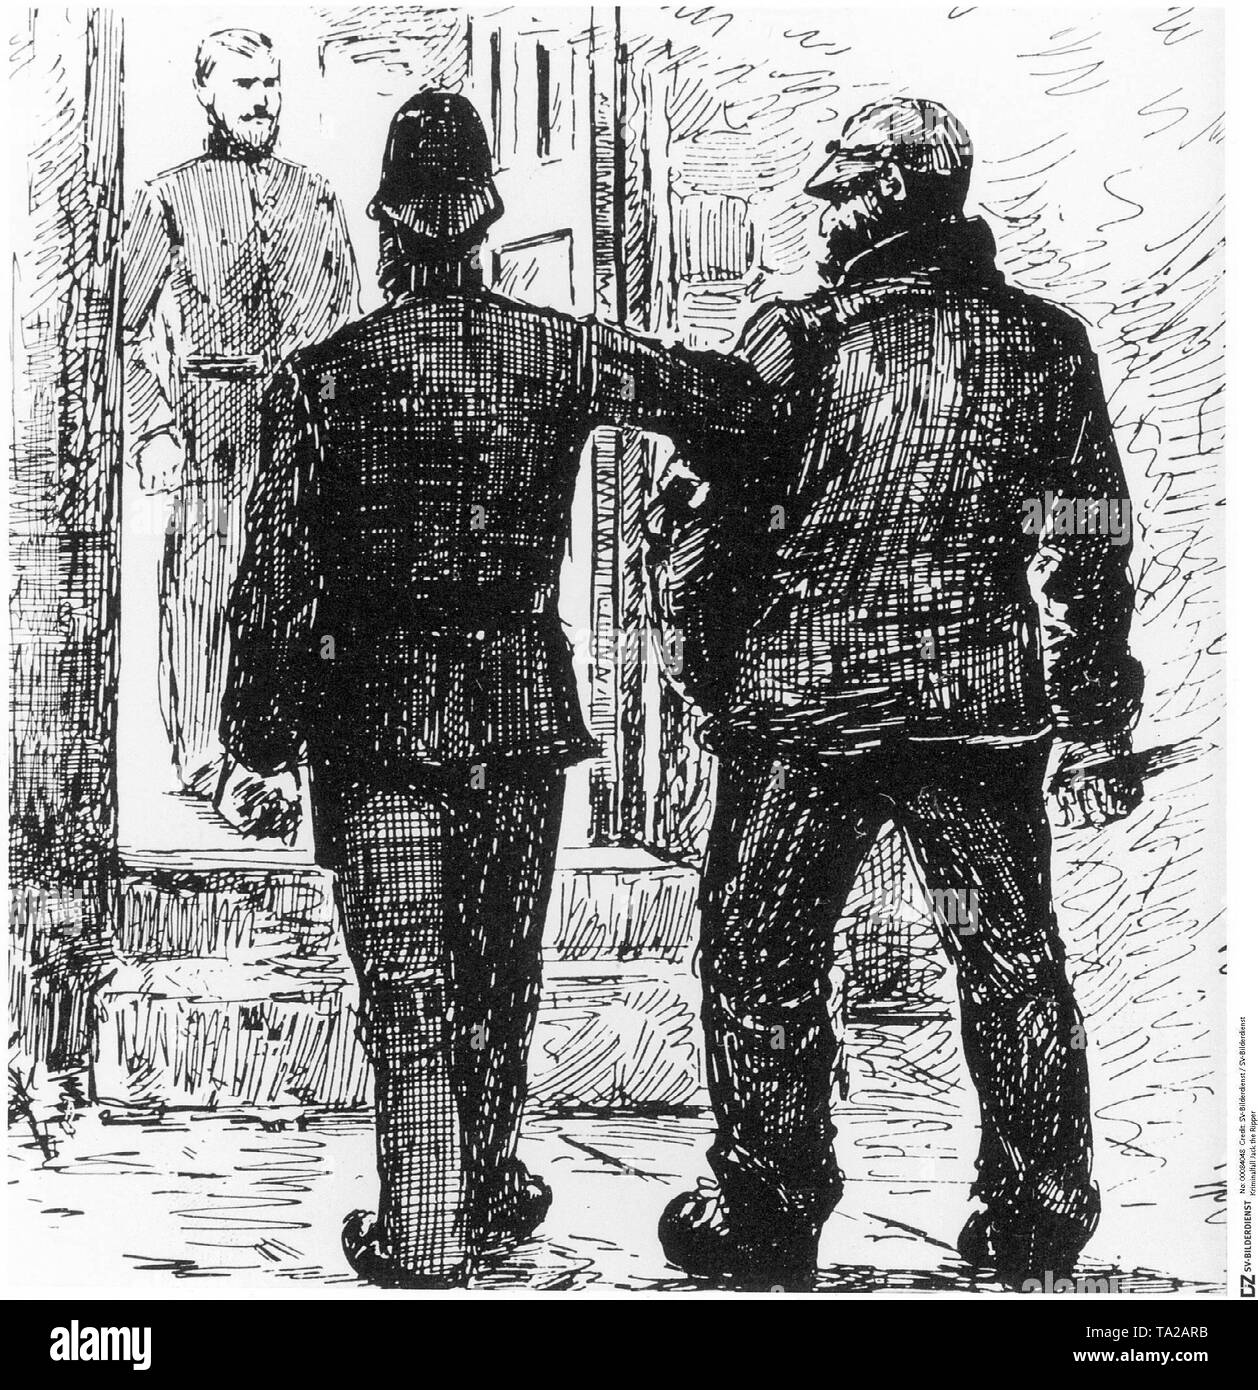 Zwischen 1888 und 1893 Menschen, die mit einem Messer in der Hand in der Londoner Unterwelt angetroffen wurden, wurden sofort als Mord festgenommen. Die Jagd nach Jack the Ripper die Polizei nervös, da sie unter dem starken Druck der Öffentlichkeit aufgrund ihrer Fehler gemacht hatte. Hier ein Verdächtiger ist zu einer Polizeistation in Whitechapel. Stockfoto